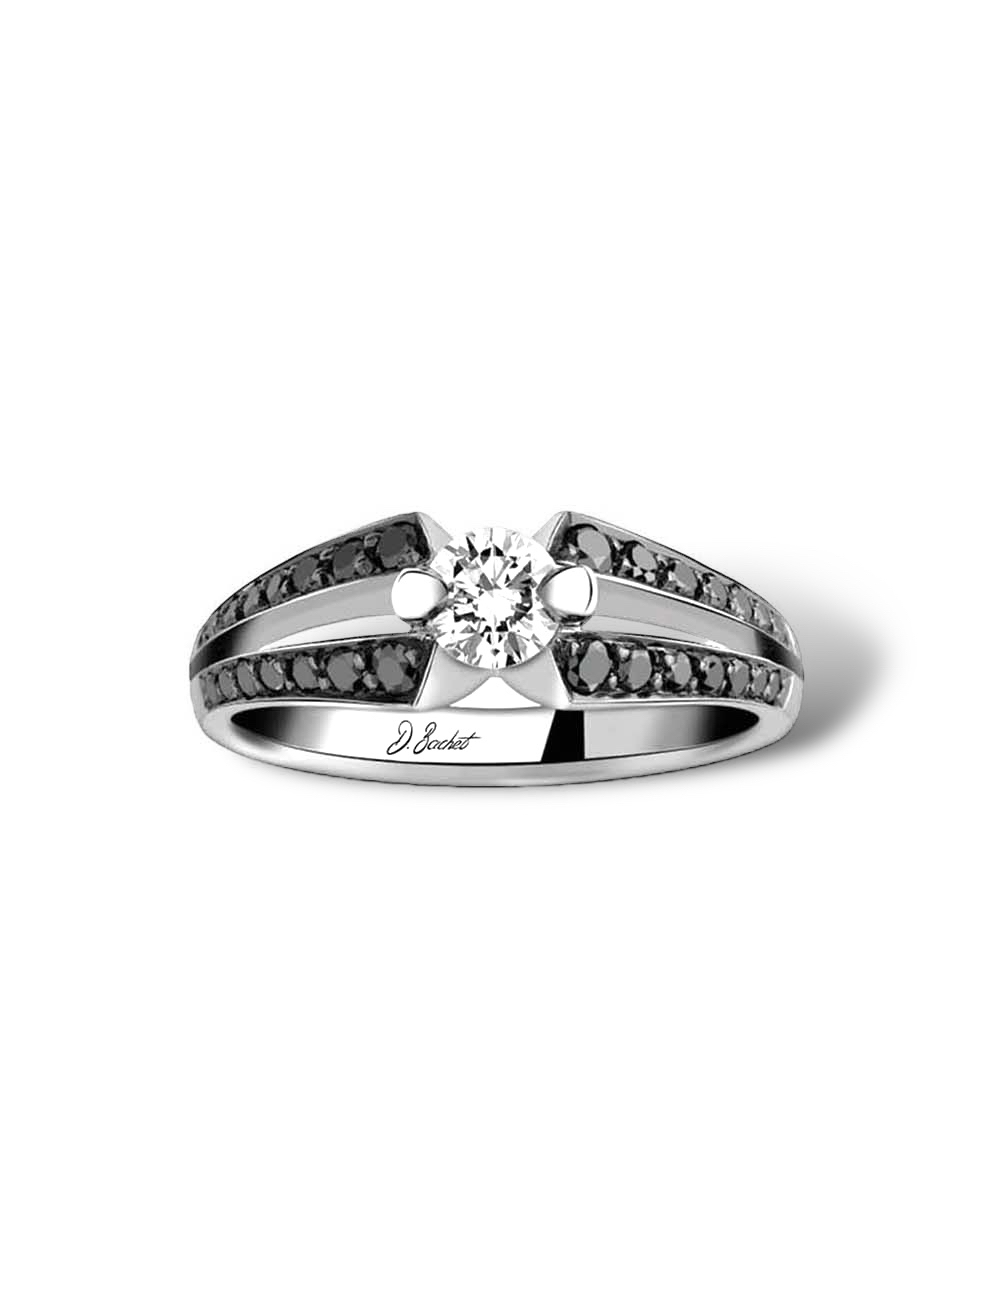 Bague fiançailles moderne 0.30ct diamant blanc, monture platine avec diamants noirs, élégance audacieuse.